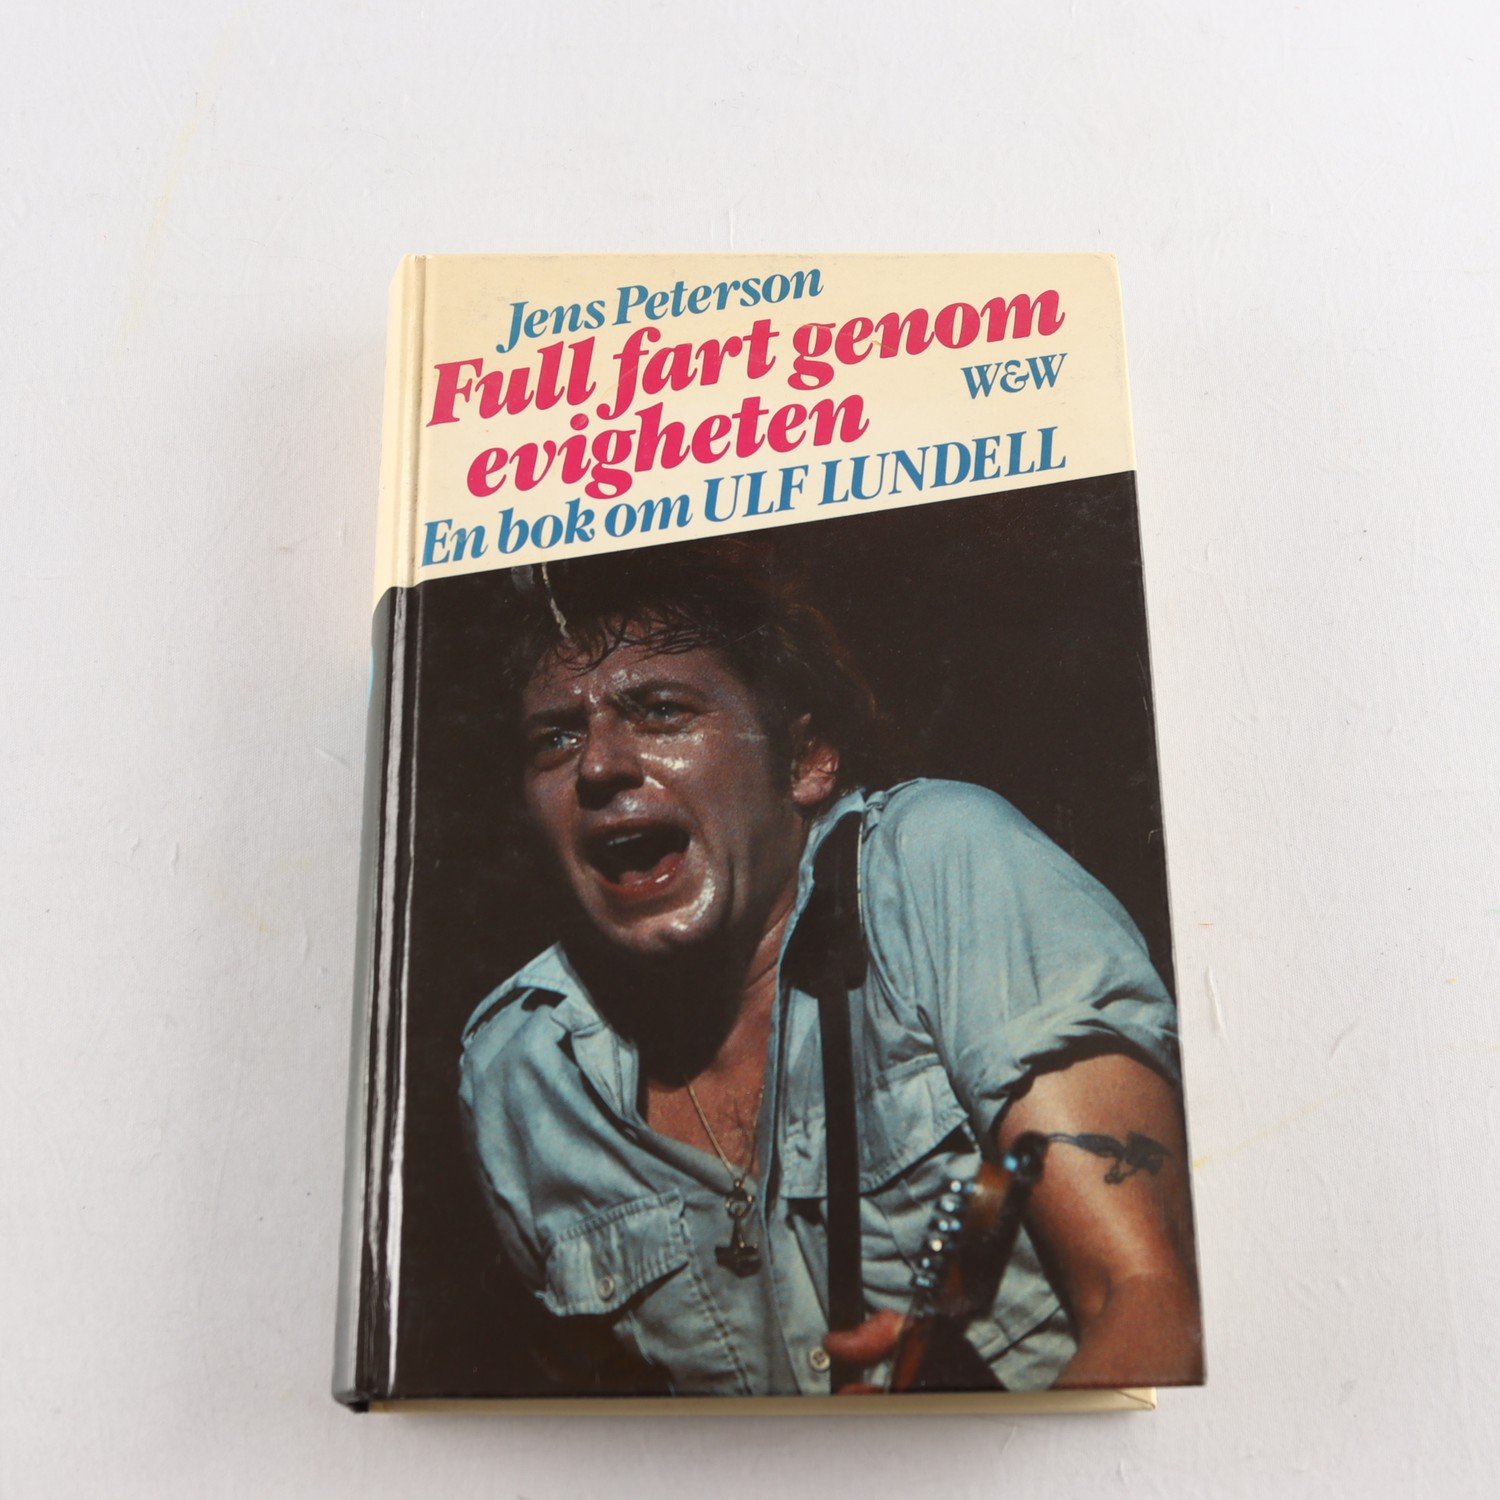 Full fart genom evigheten: En bok om Ulf Lundell, av Jens Peterson